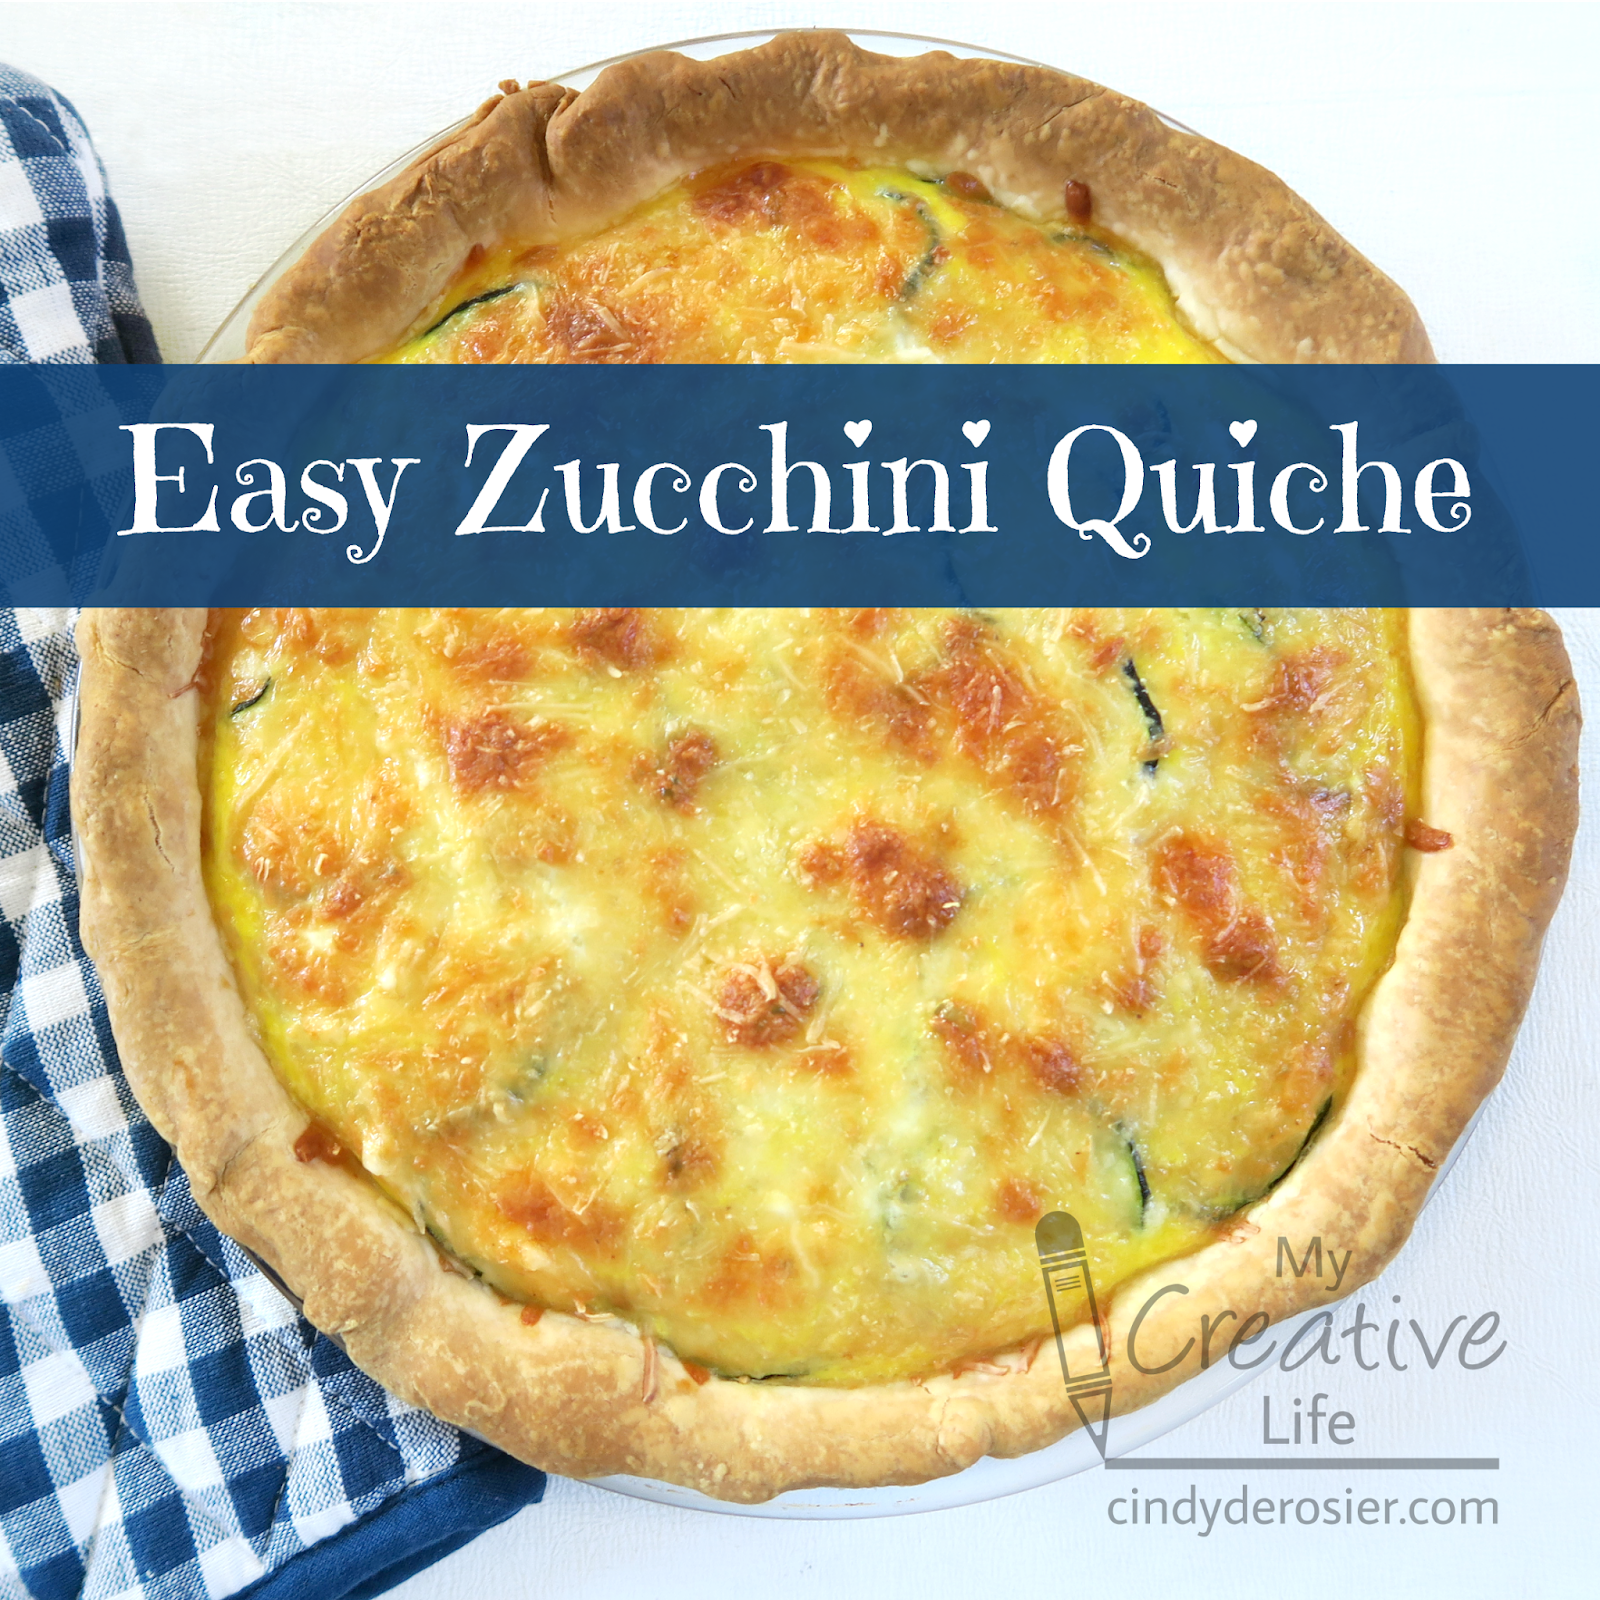 Cindy deRosier: My Creative Life: Easy Zucchini Quiche